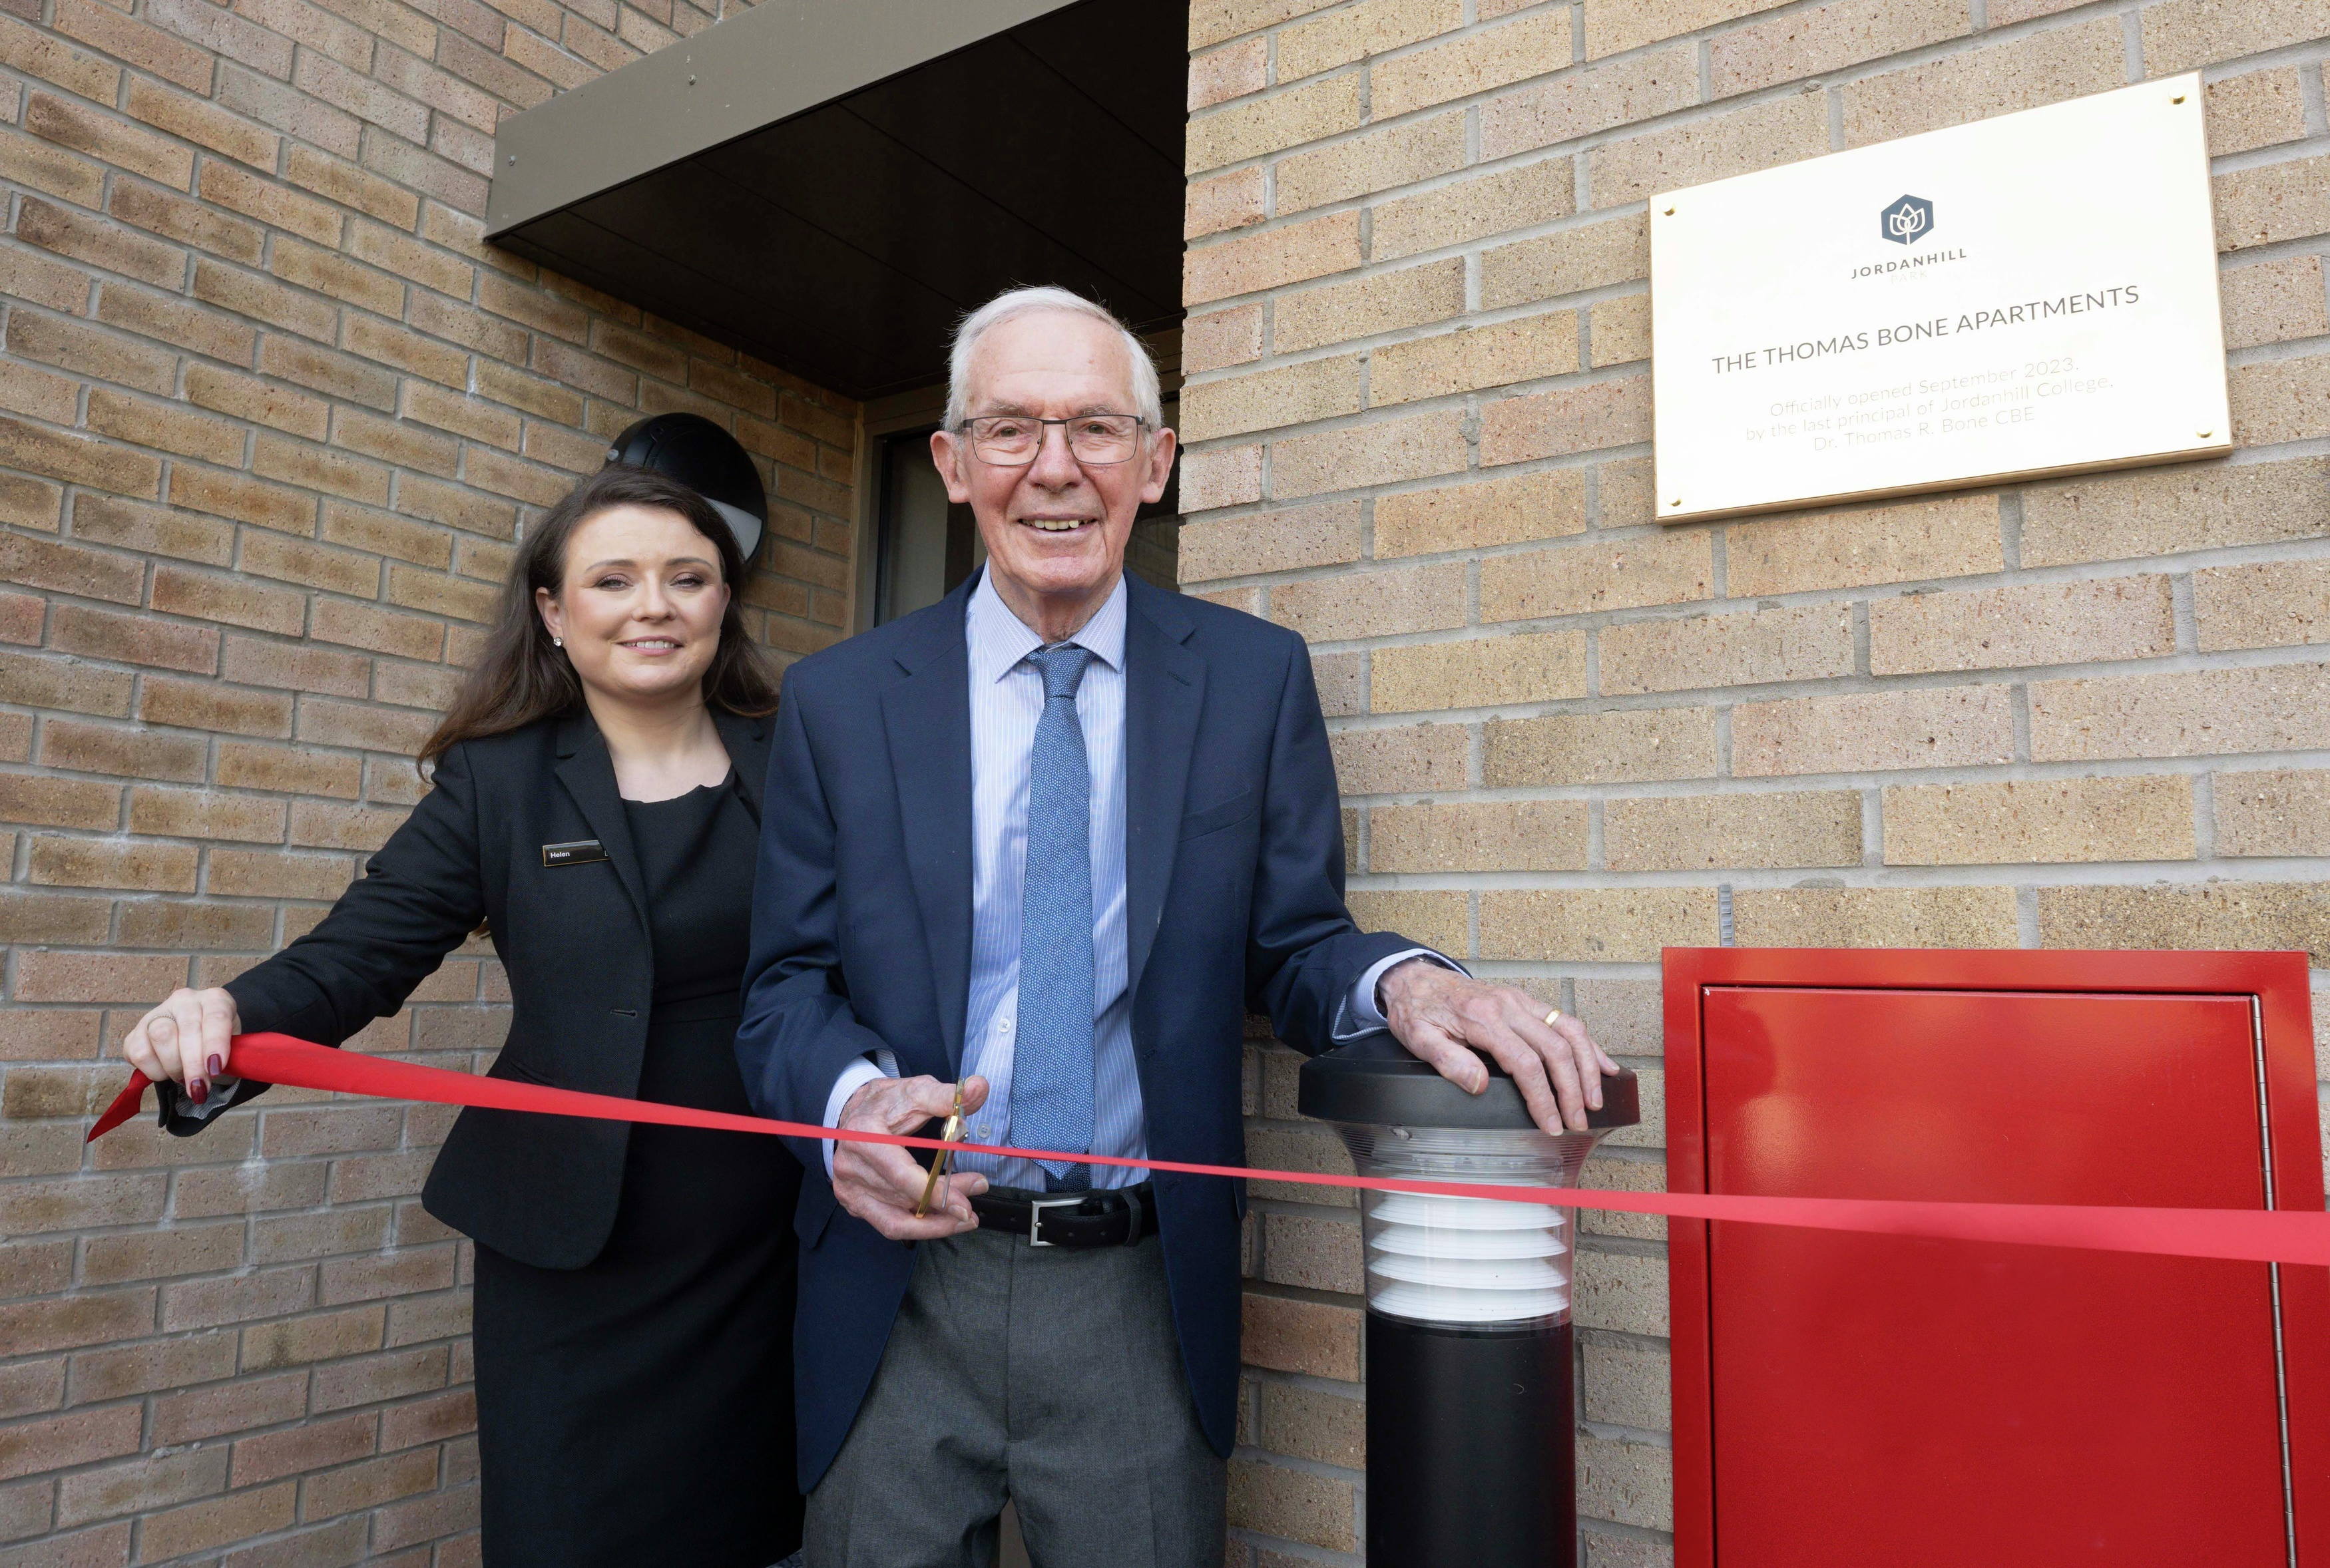 Dr Thomas Bone CBE unveils Cala apartment building in his honour